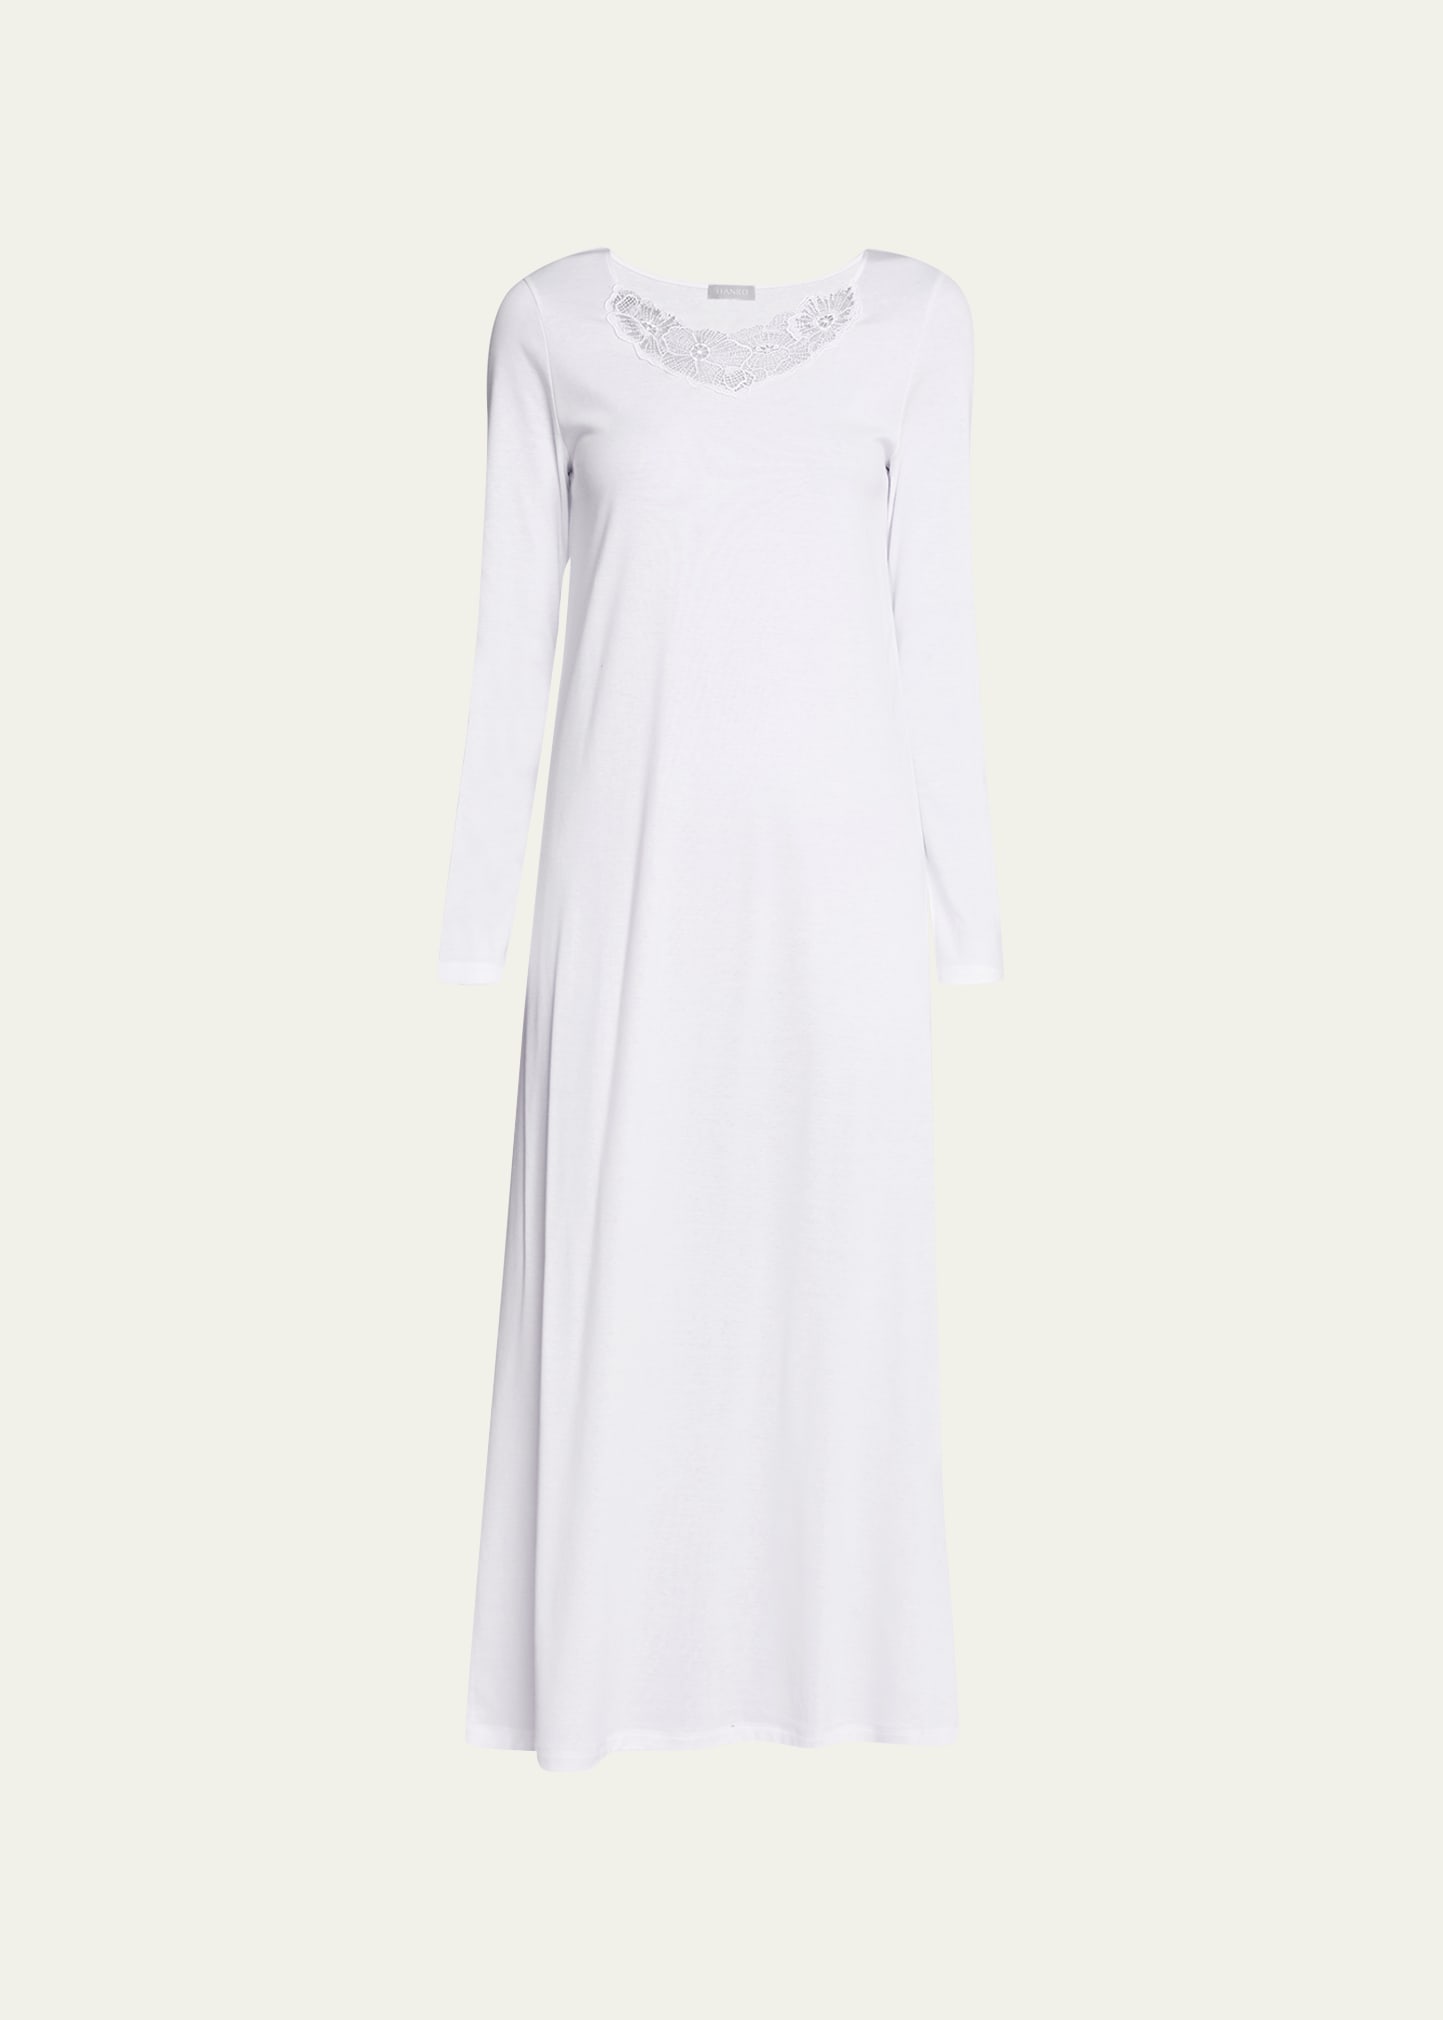 Hanro Naila Lace-trim Cotton Nightgown In White